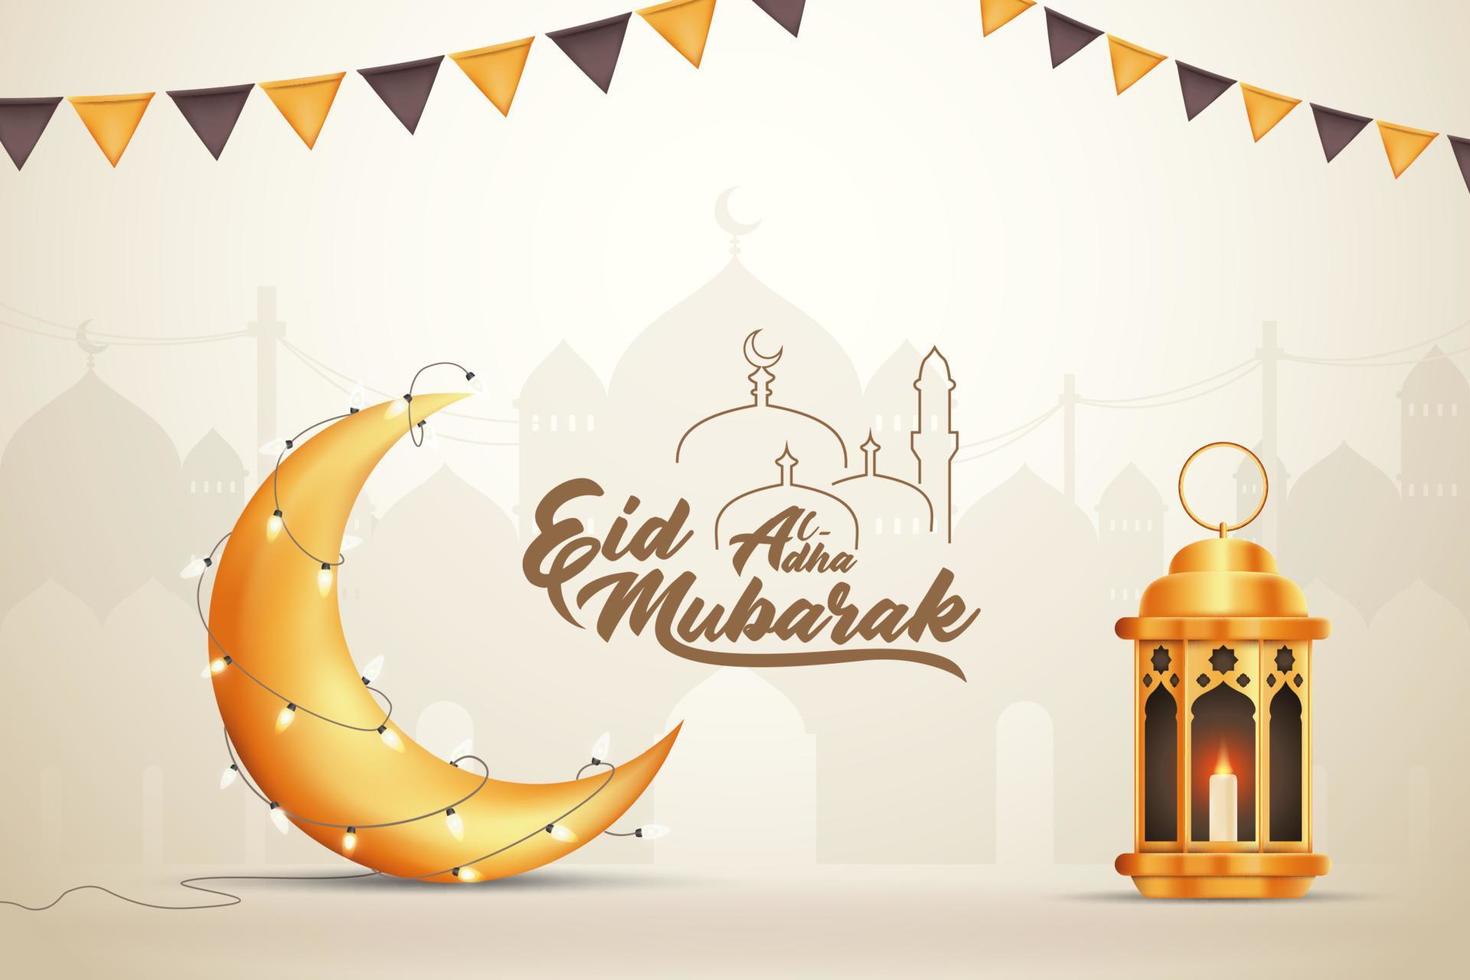 Beautilful Eid-al-adha Eid Mubarak Greetings Vector Illustration Background